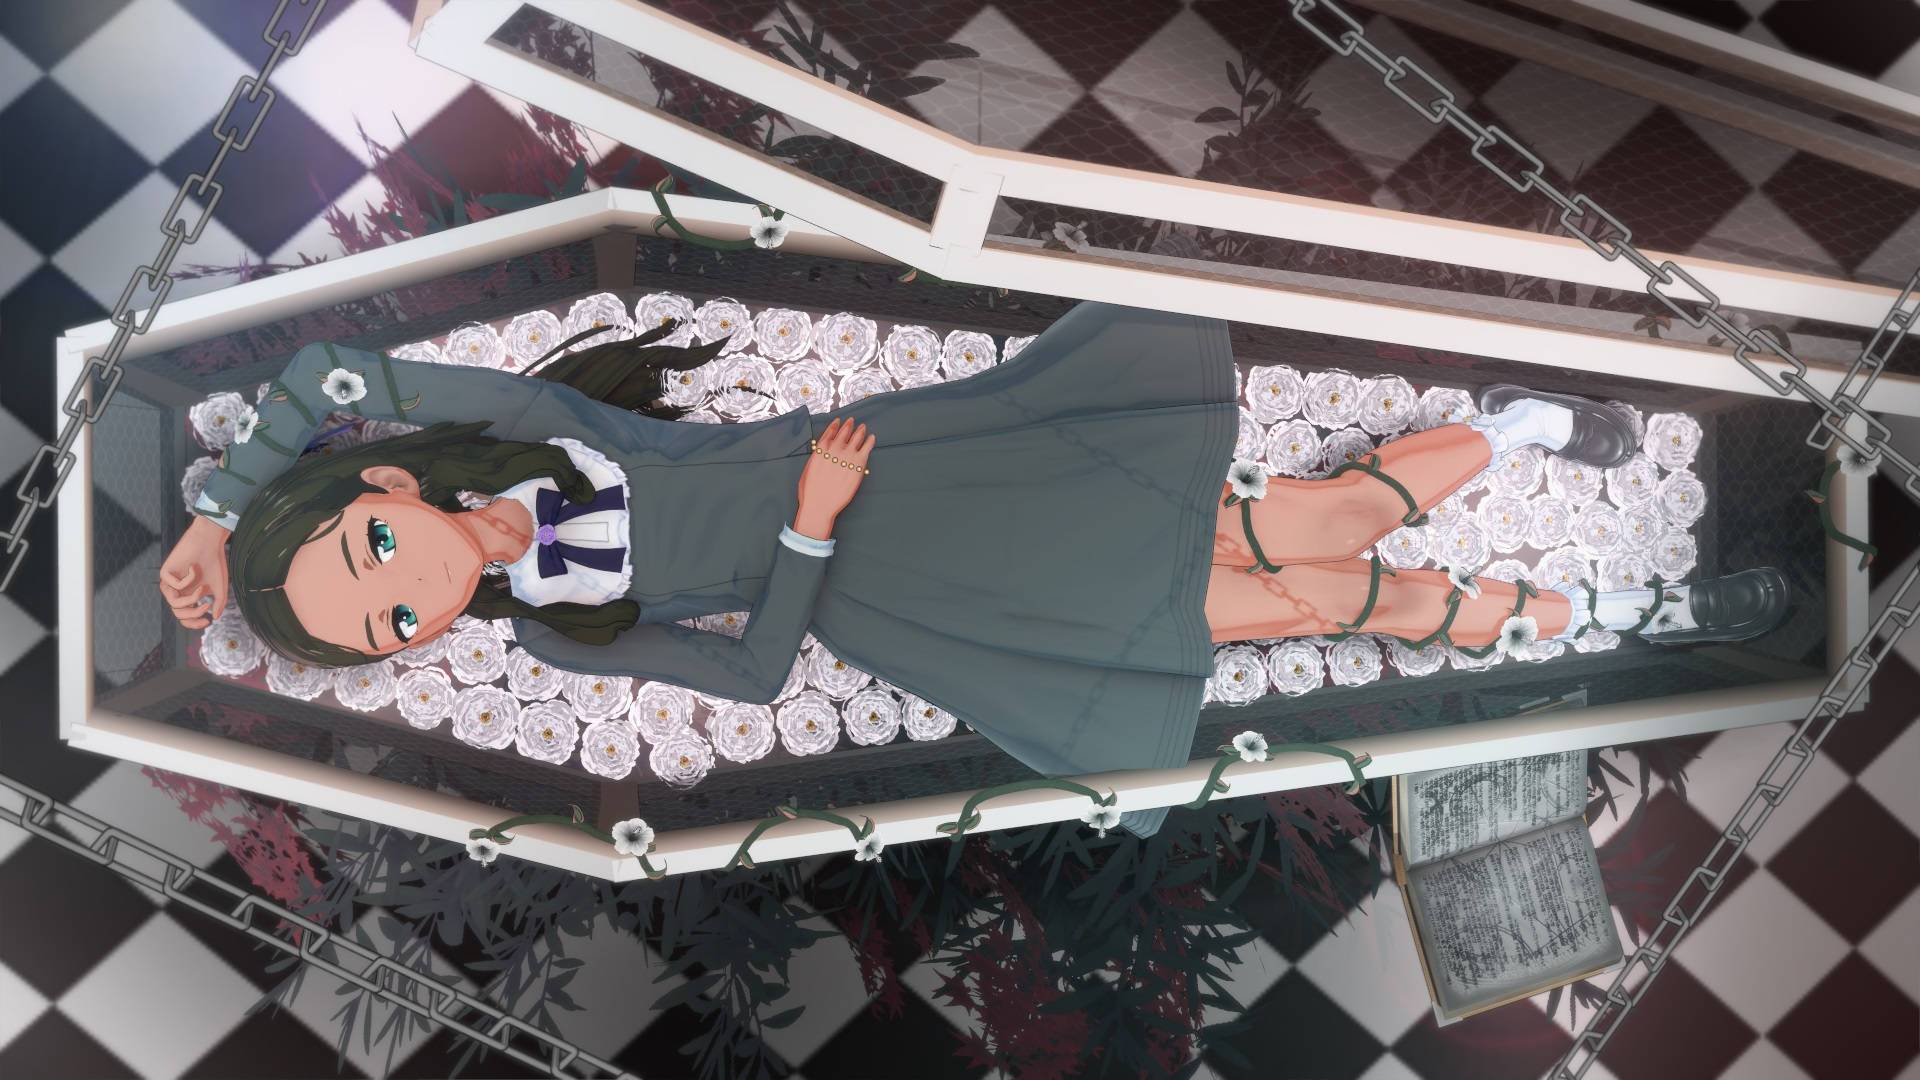 Wonderegg Priority Neiru Aonuma Puede Referirse A Una Imagen De Fondo De Pantalla De Computadora O Móvil Inspirada En El Popular Anime 